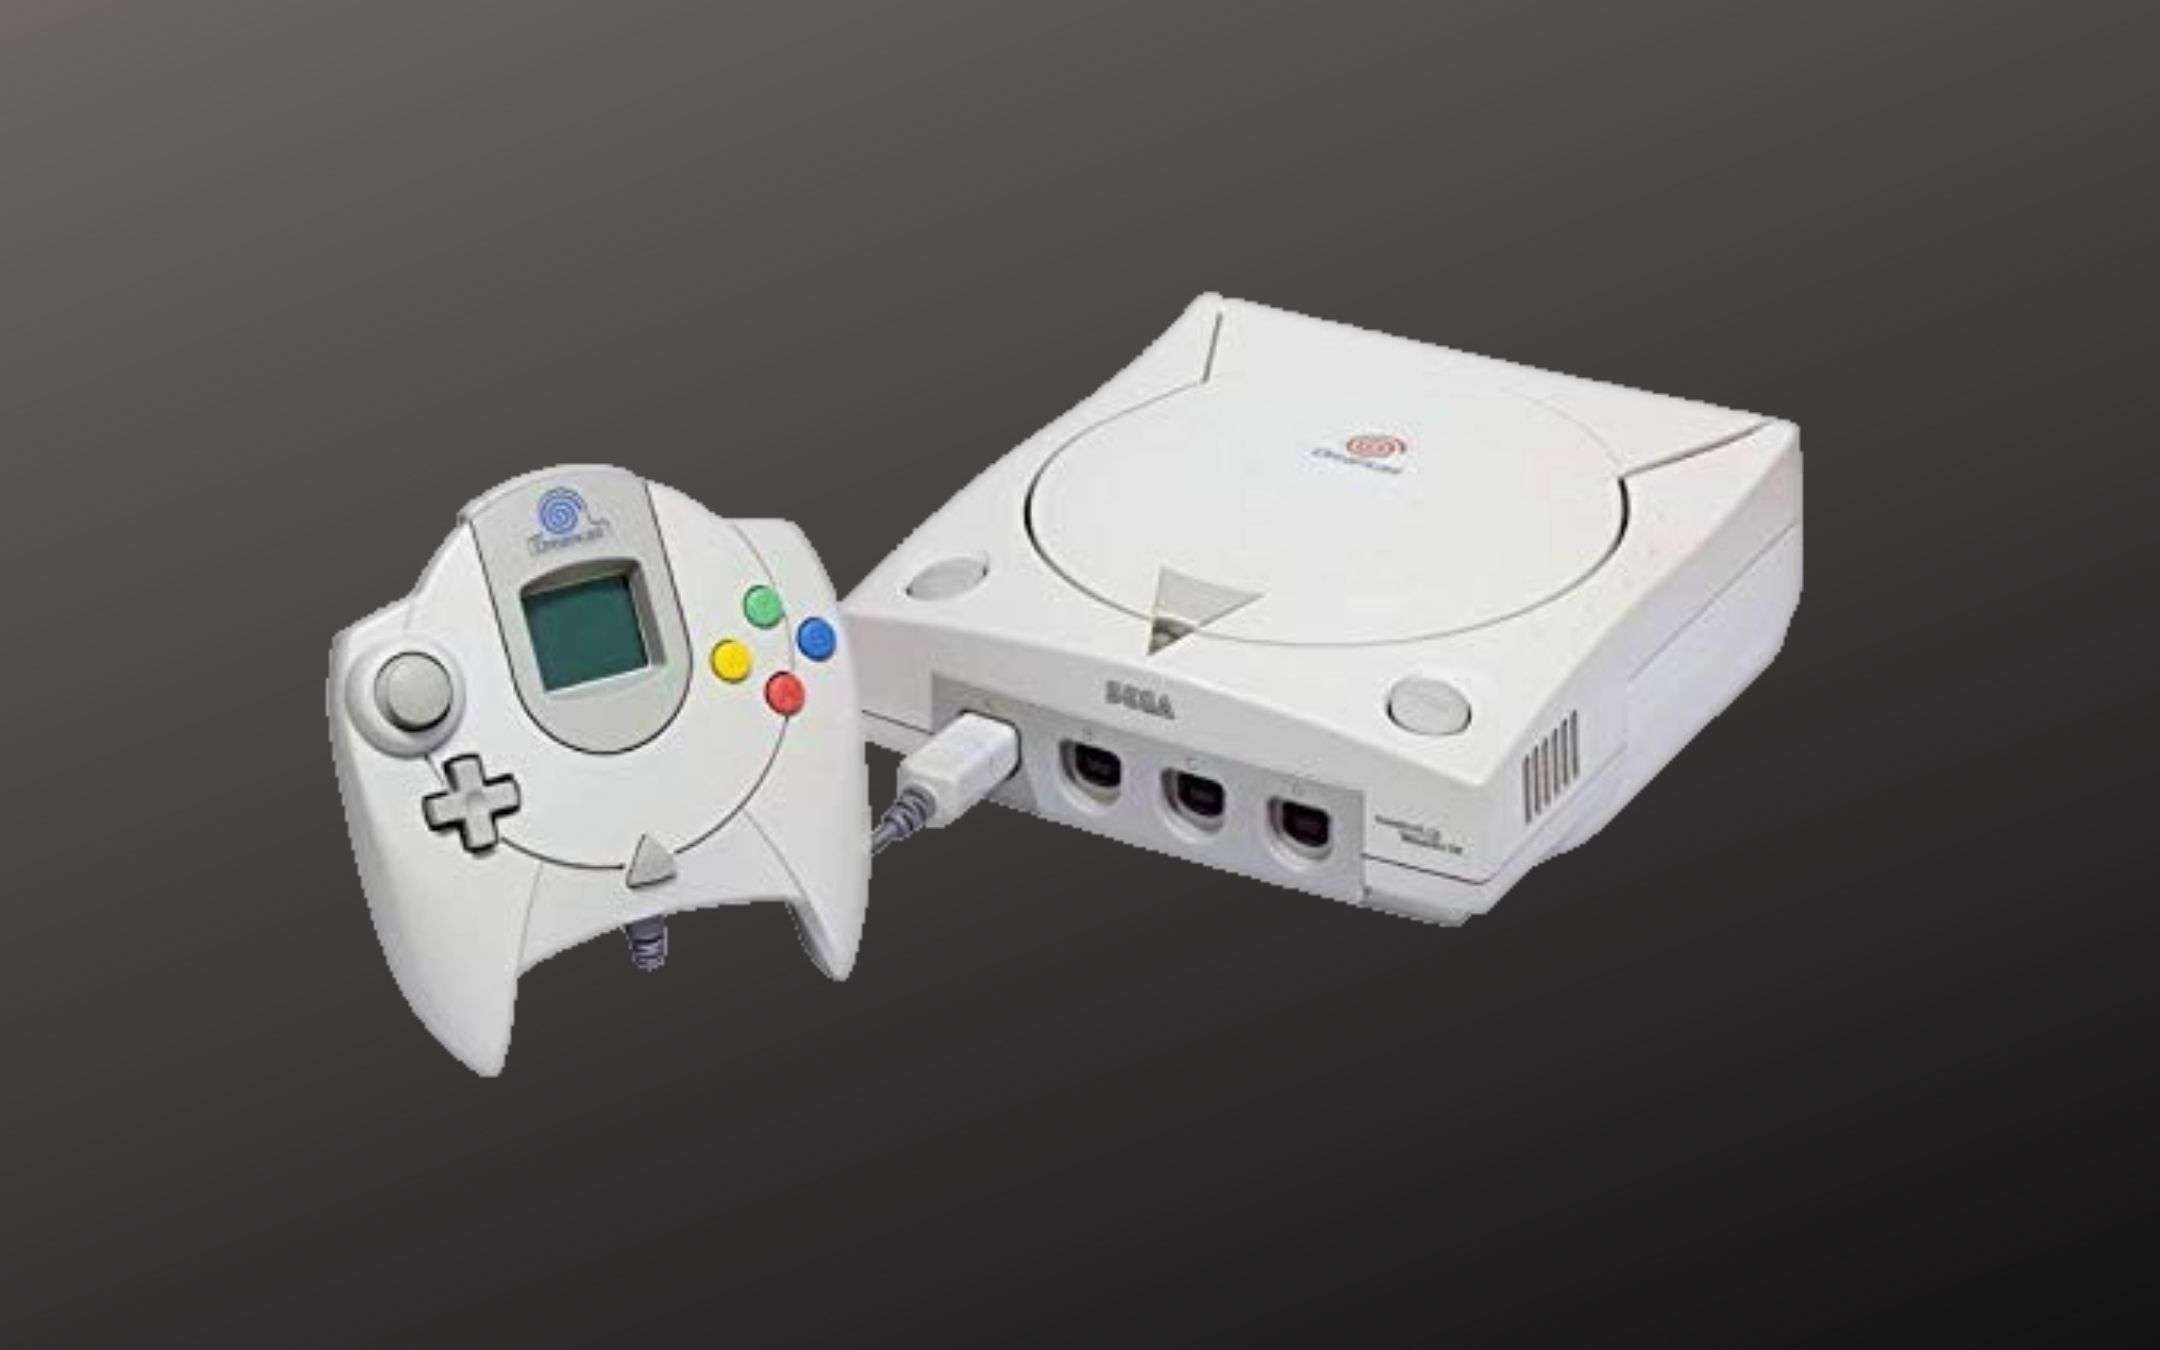 Sega: Dreamcast Mini in arrivo entro fine anno?